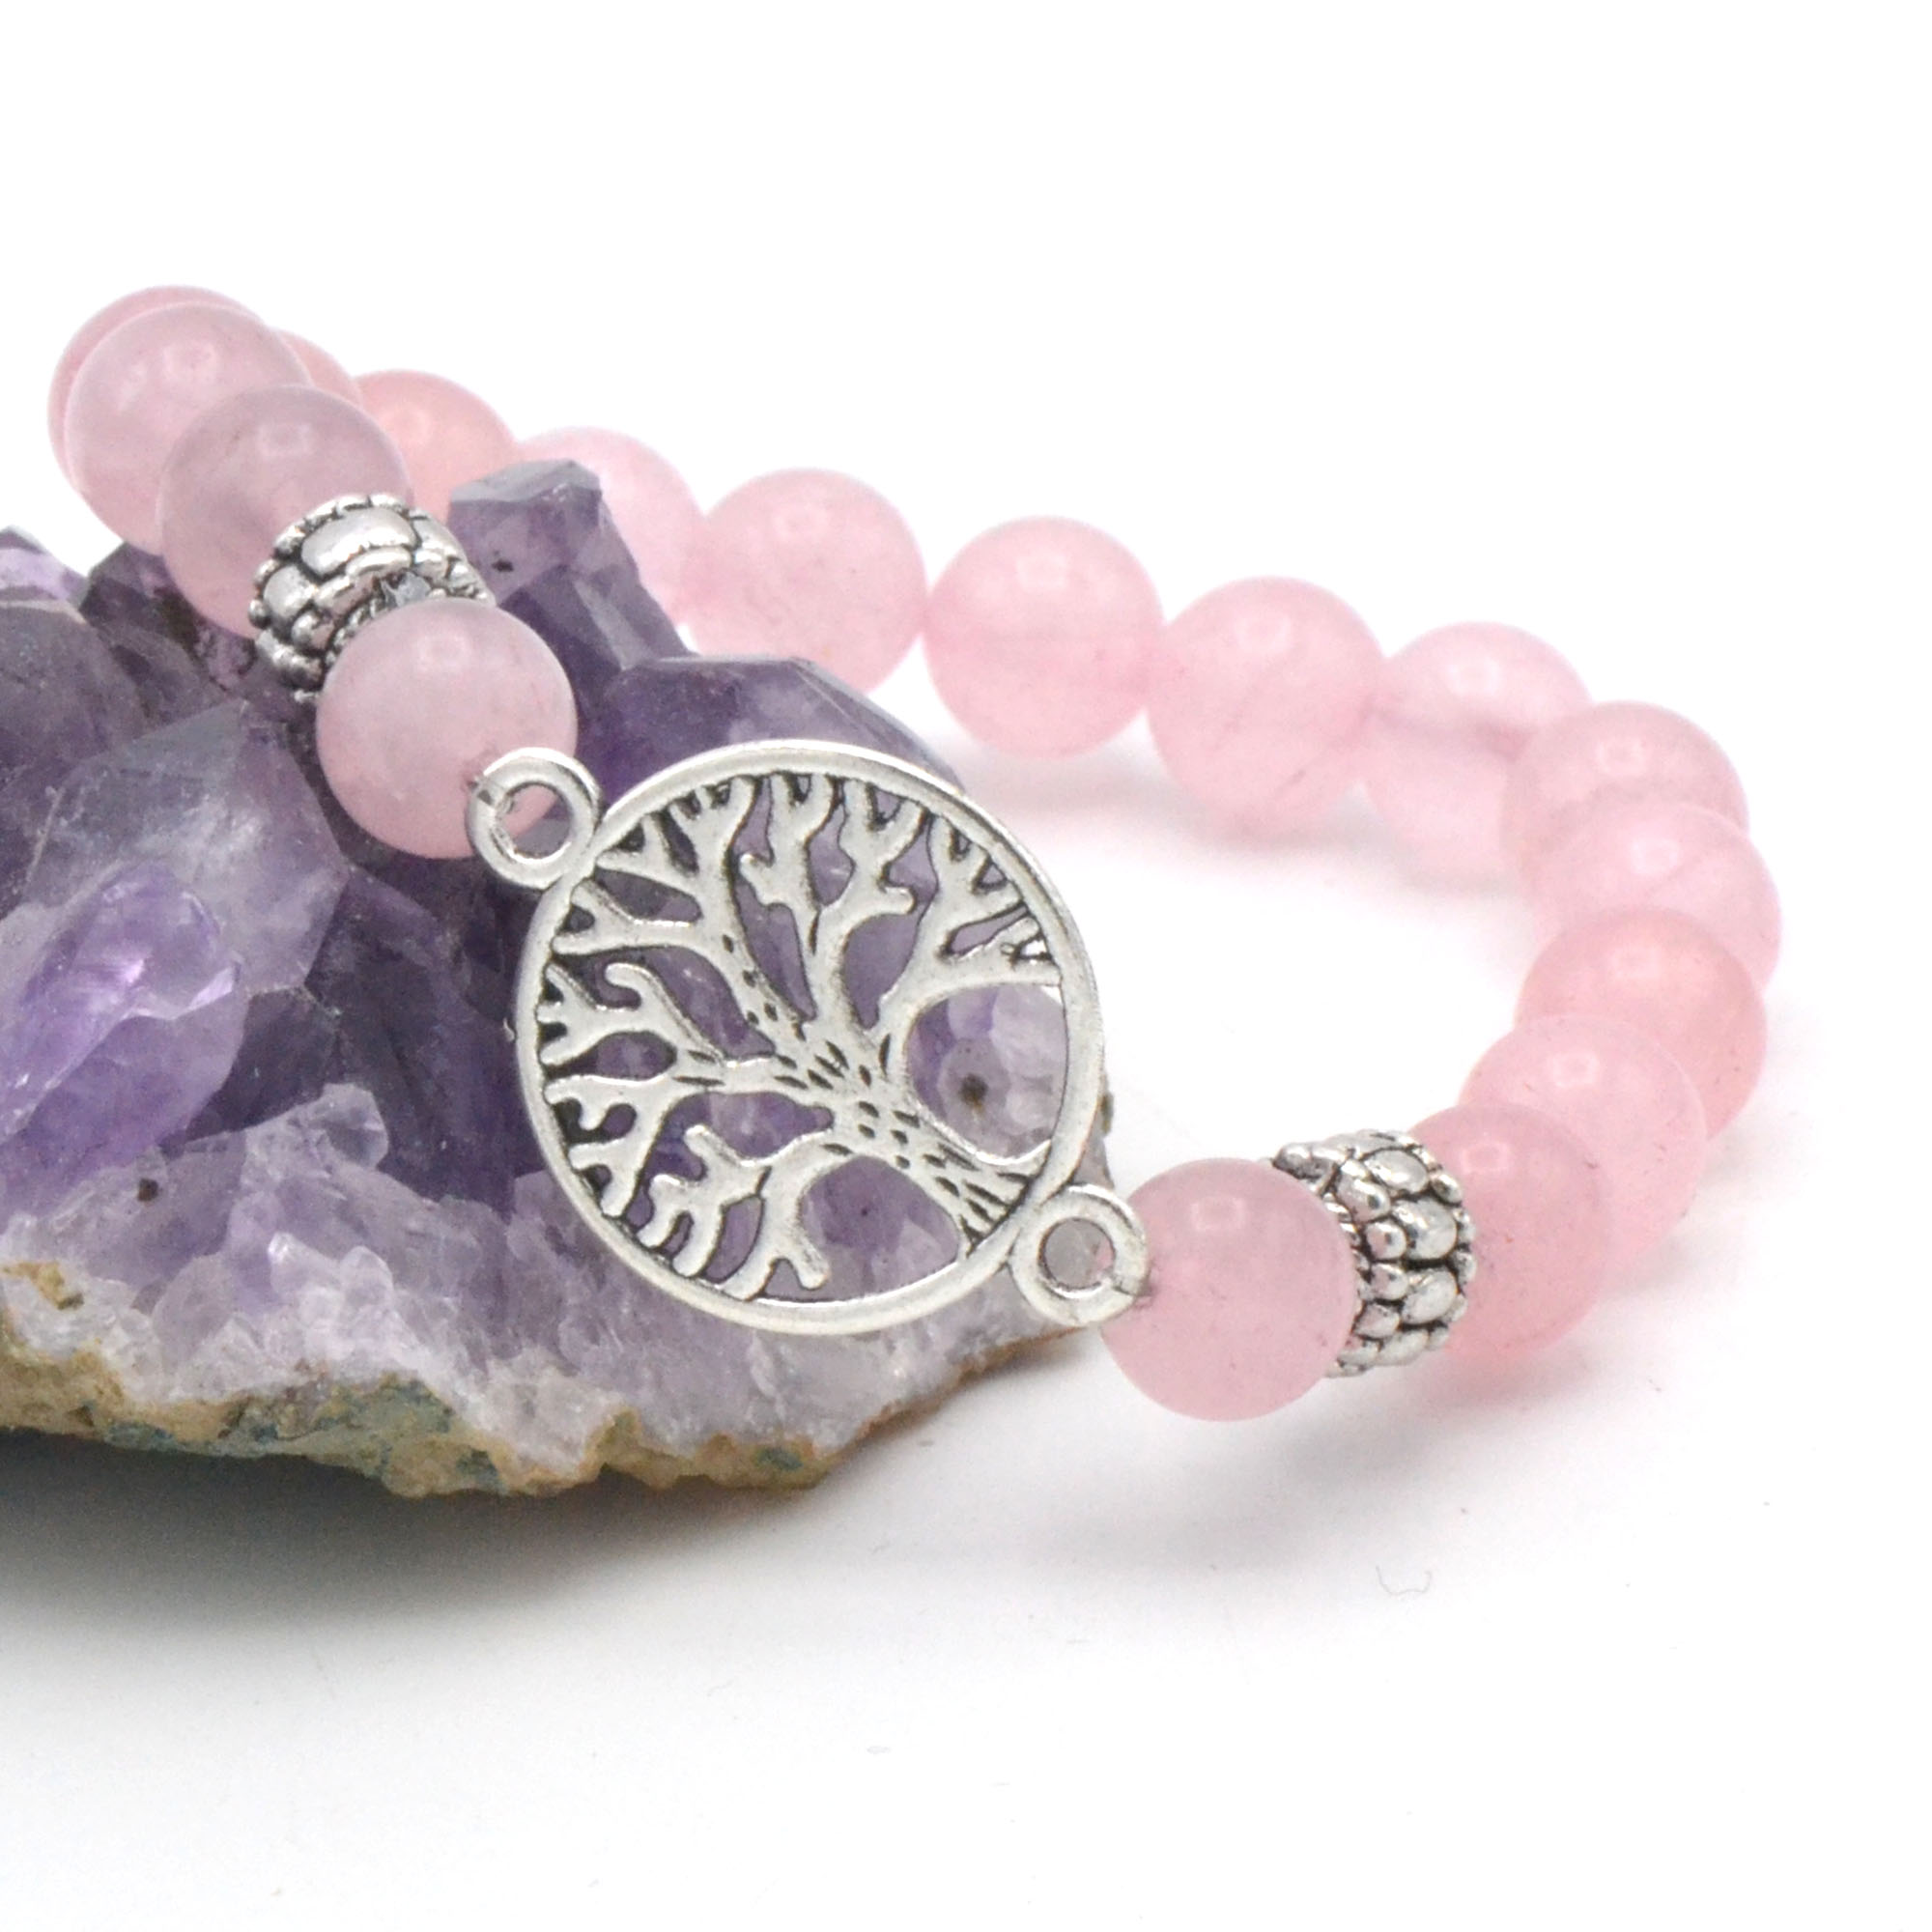 Bracelet arbre de vie connexion, en pierre naturelle de quartz rose -  Bracelet spirituel/Arbre de vie connexion - Miracles minéraux